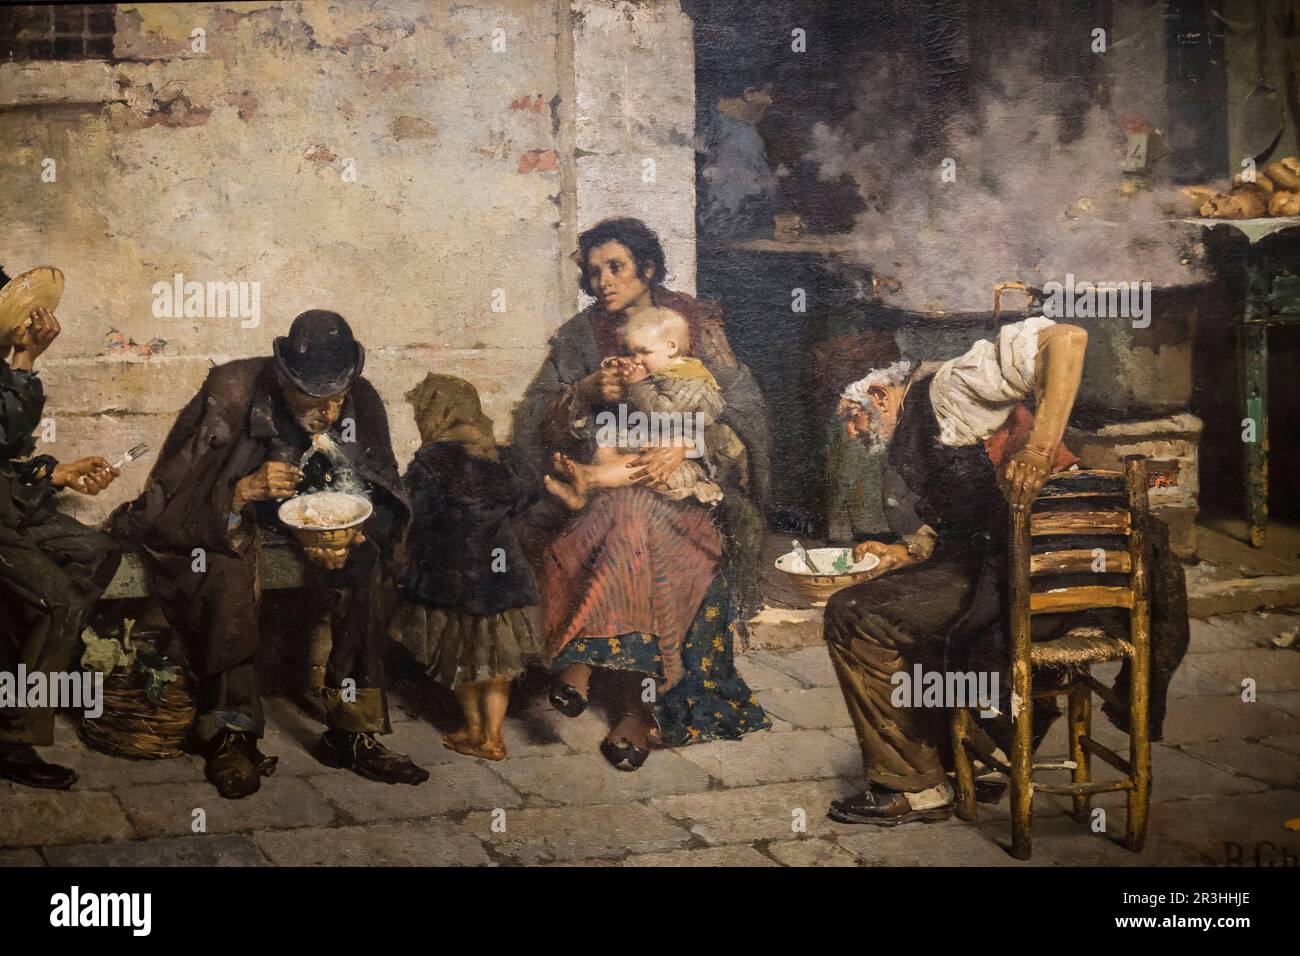 Reynaldo Giúdici, La sopa de los pobres (Venecia), 1884, óleo sobre tela, Museo Nacional de Bellas Artes (MNBA) ,Buenos Aires, republica Argentina, cono sur, South America. Stock Photo